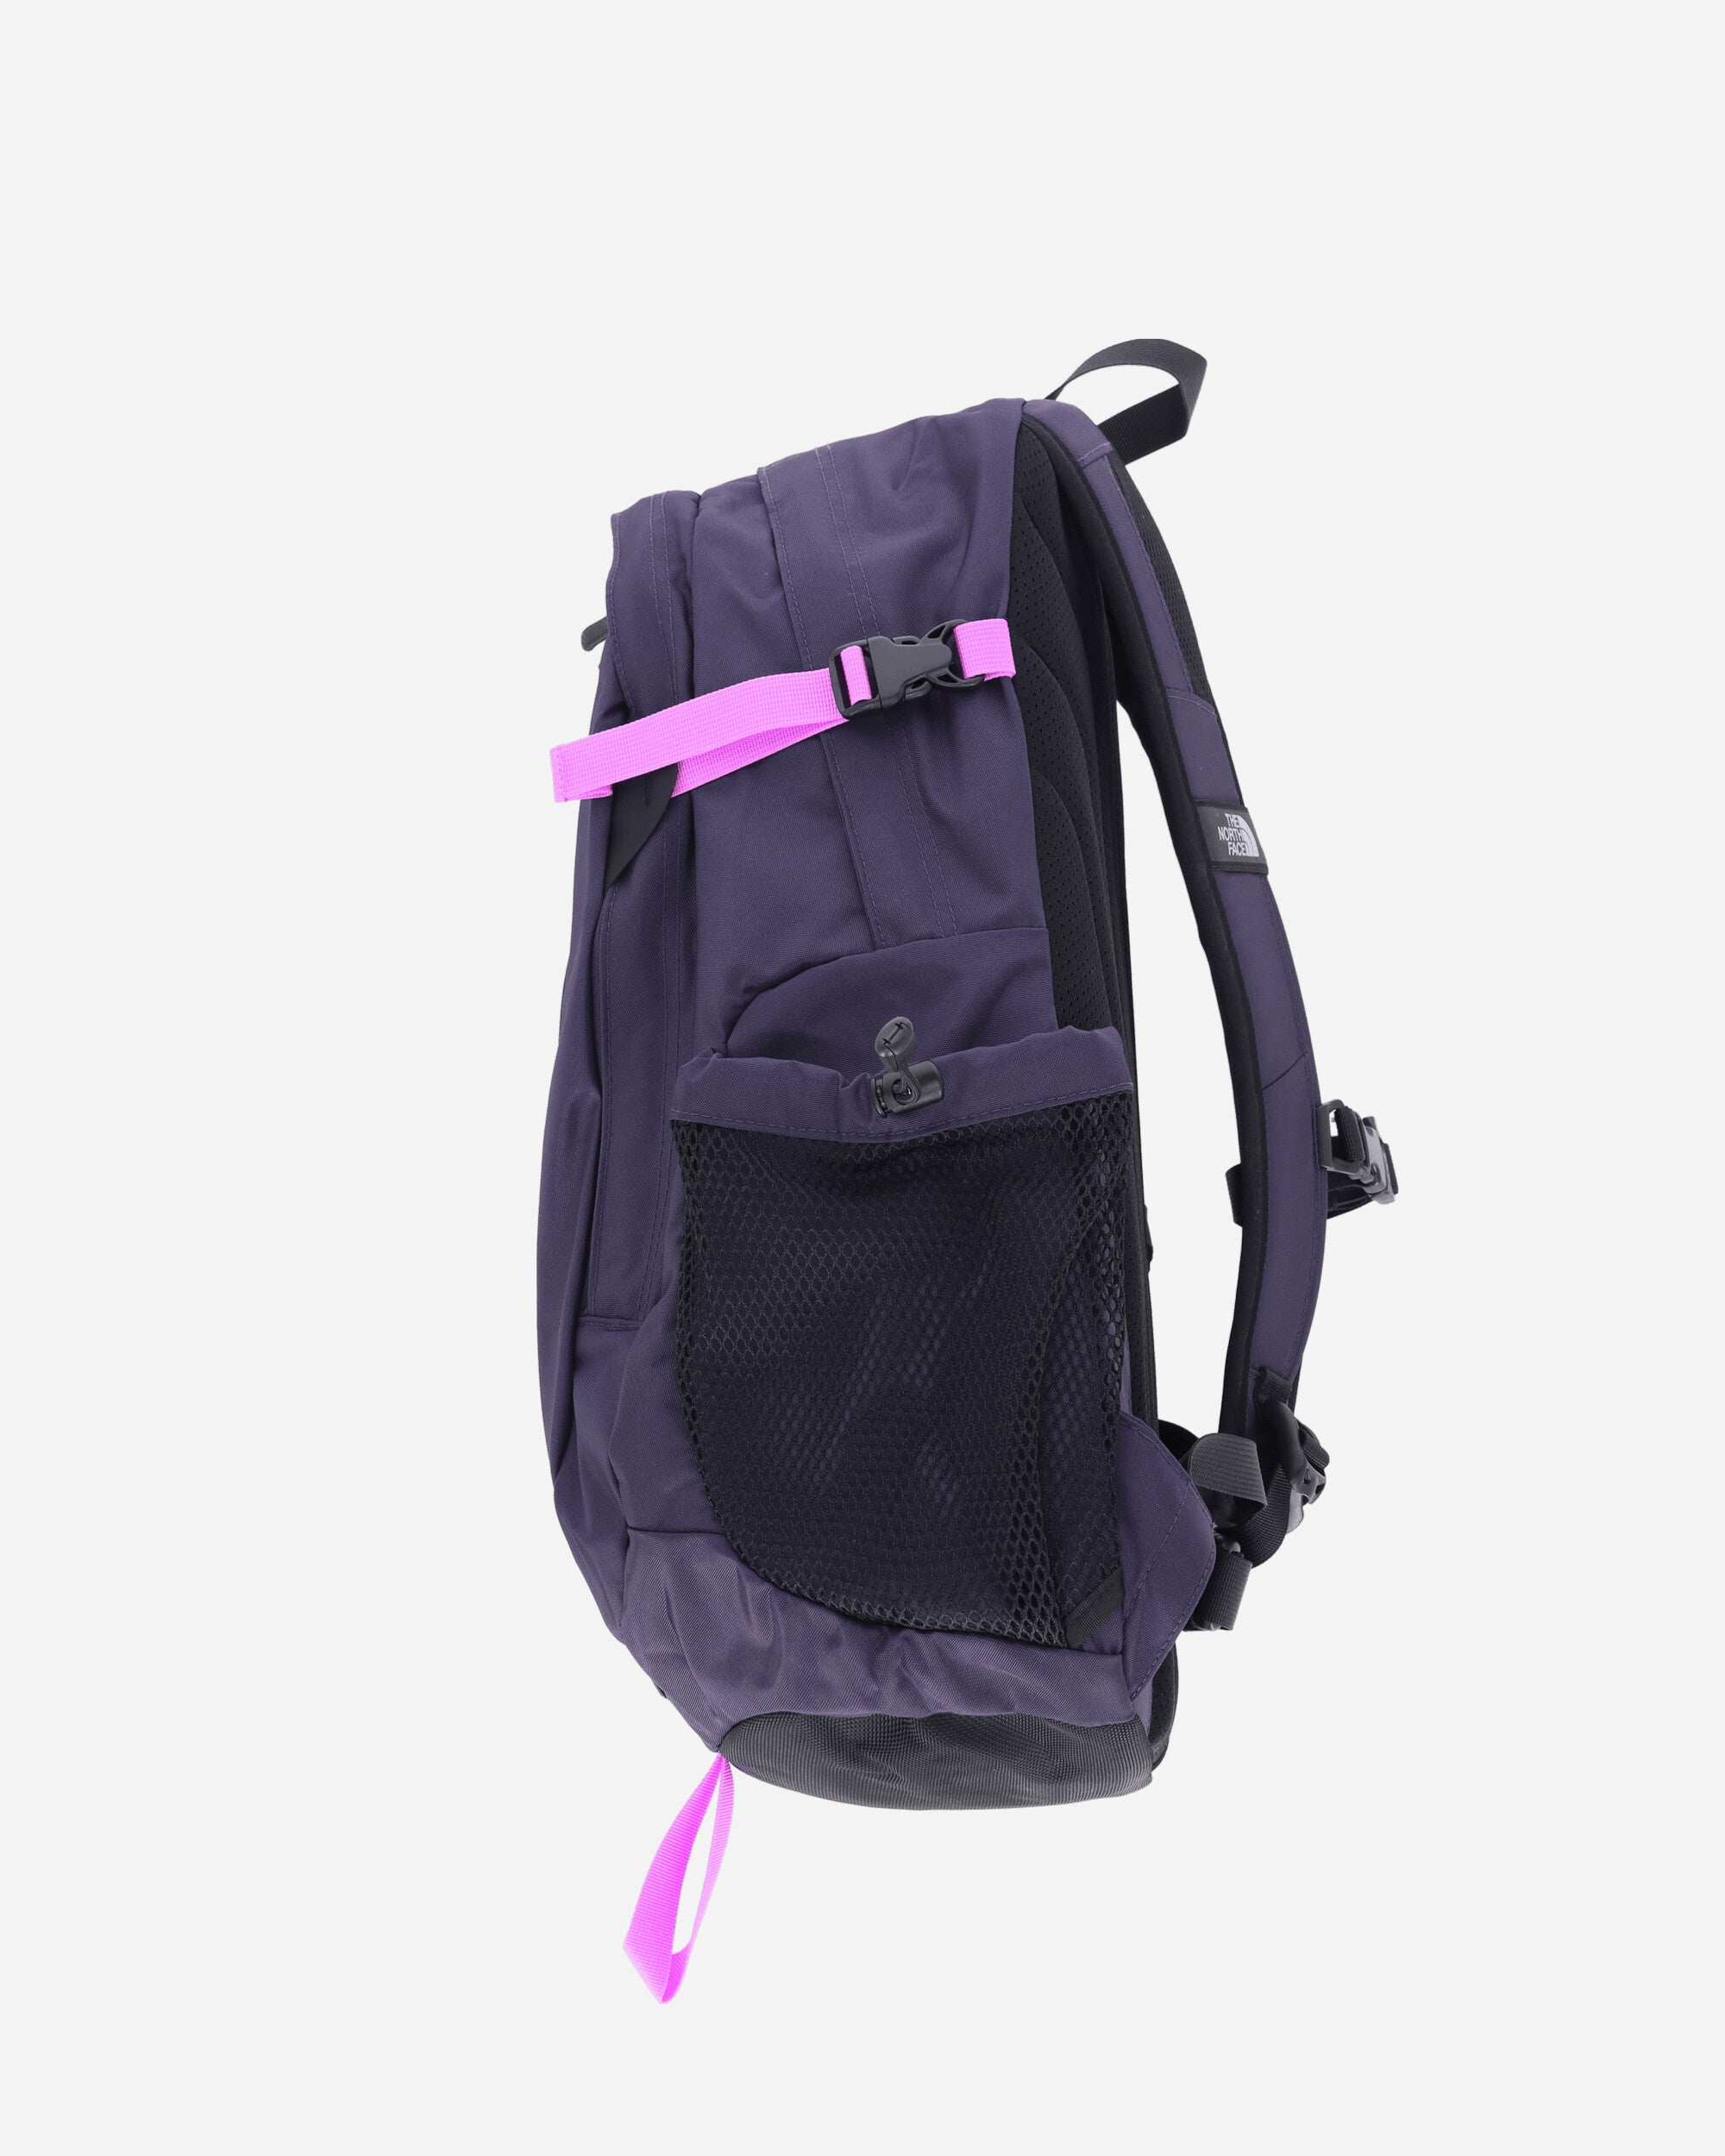 Hot Shot SE Backpack Amethyst Purple / Violet Crocus